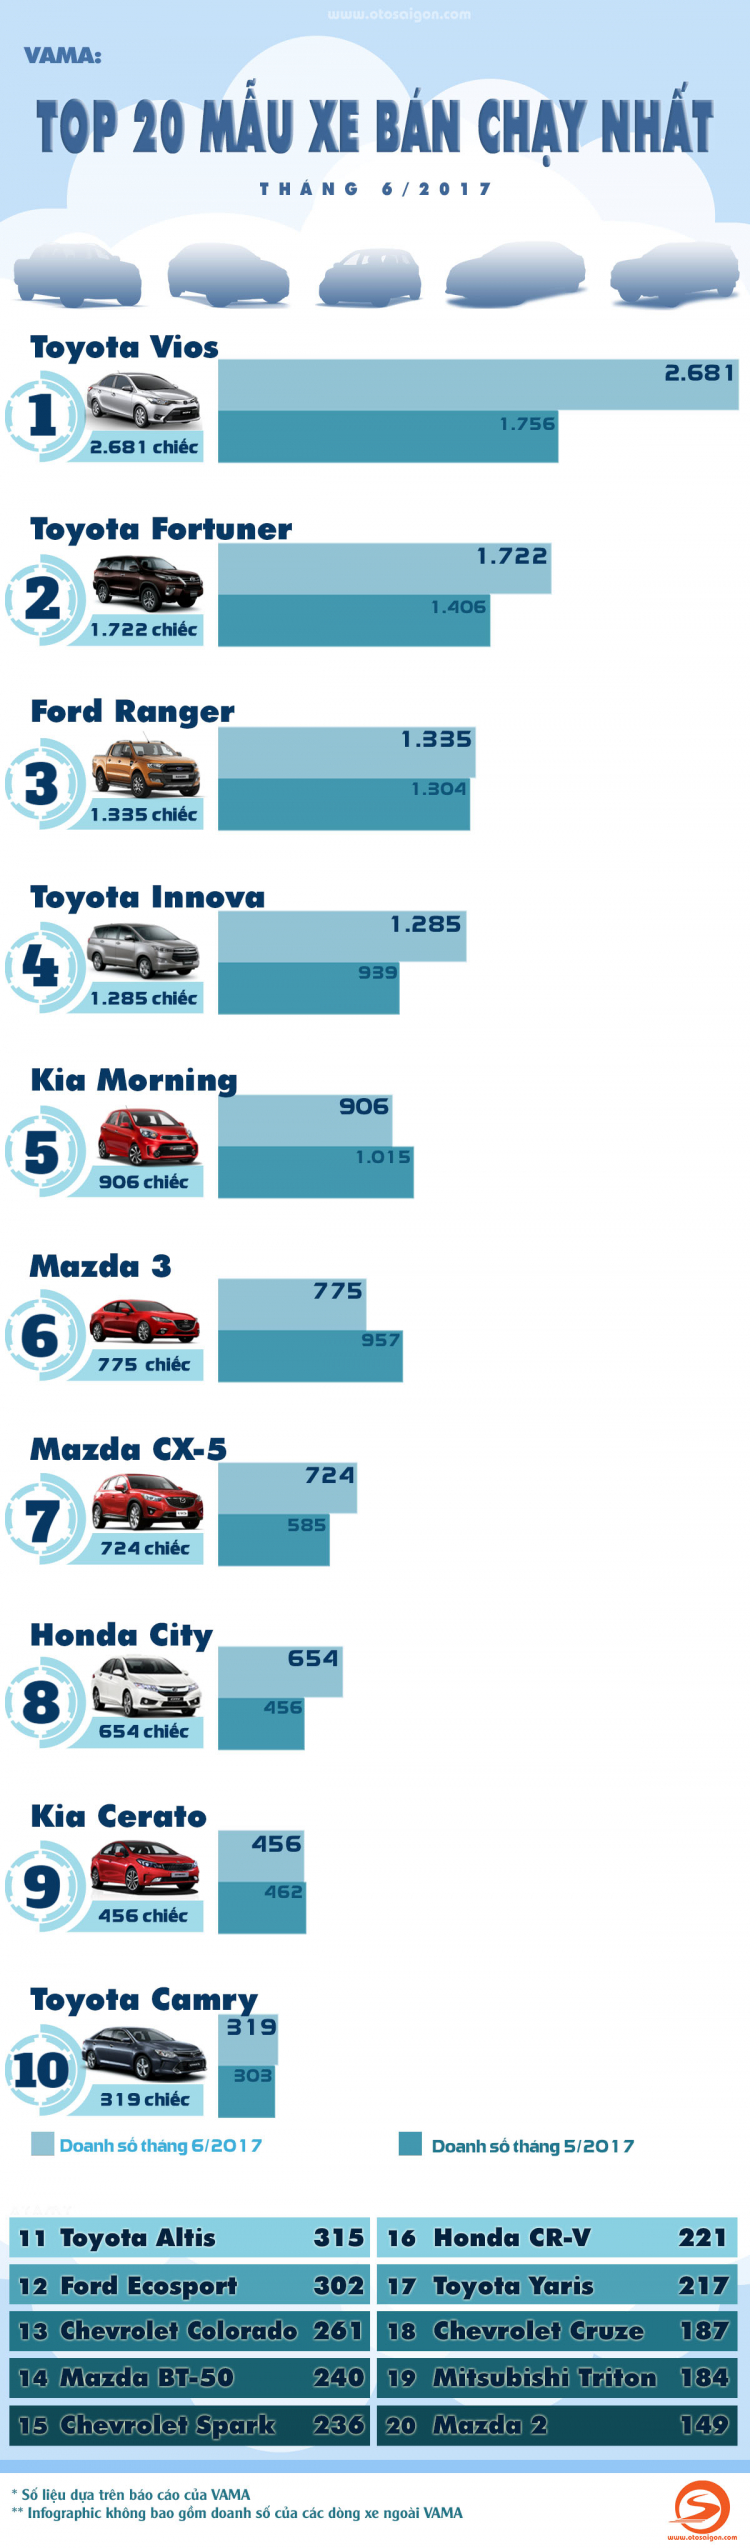 [INFOGRAPHIC] Top 20 xe bán chạy nhất tháng 6/2017